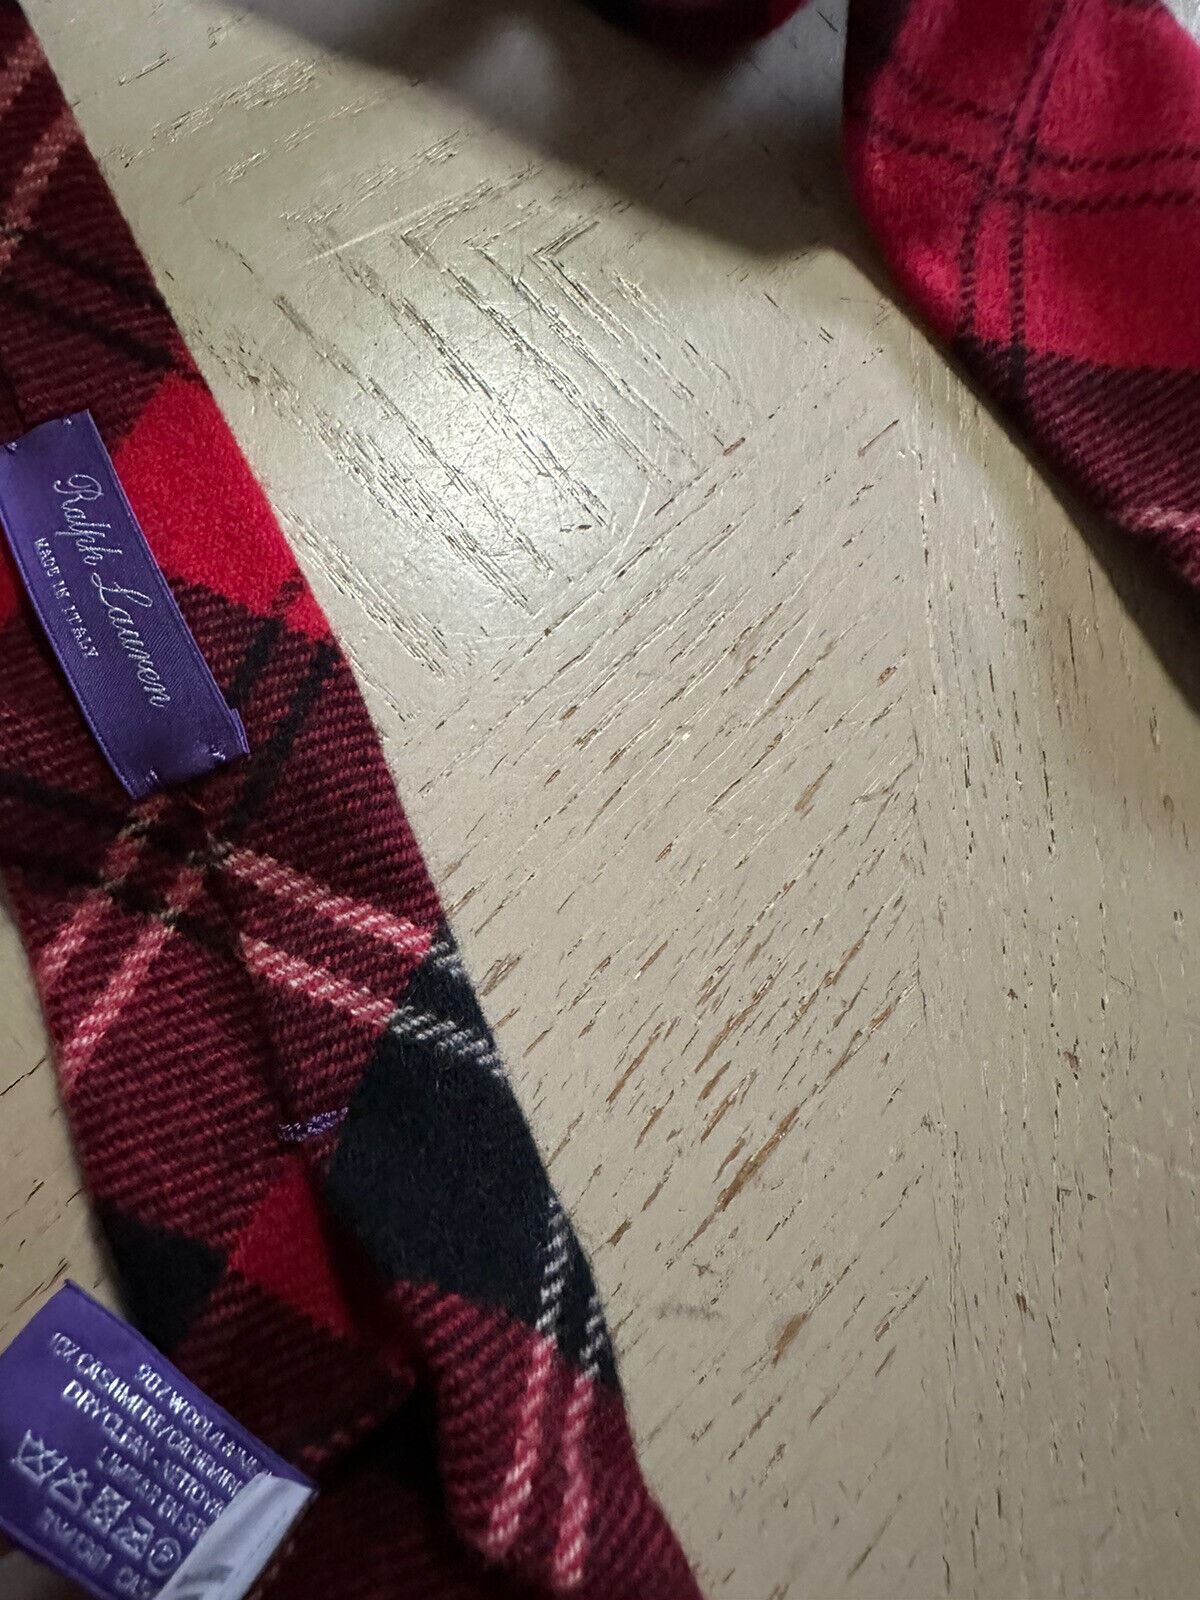 Новый красный галстук с кашемировым воротником Ralph Lauren Purple Label за 265 долларов, сделанный вручную в Италии